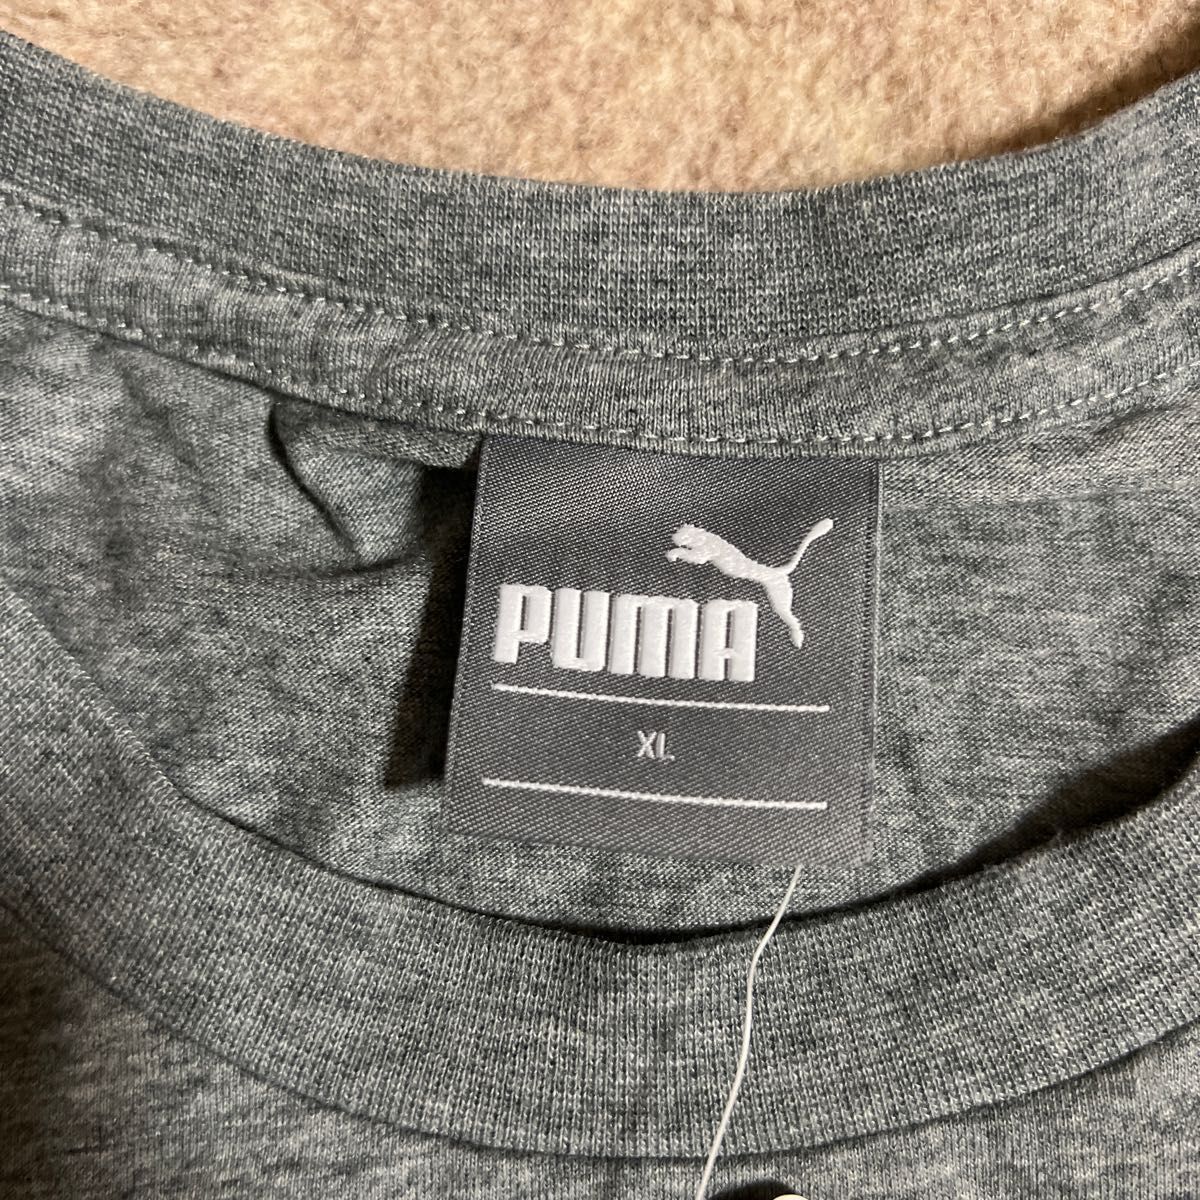 新品 PUMA 半袖Tシャツ グレー XL プーマ ドライTシャツ ビッグロコT 左袖エンブレム 綿ポリ 柔らかい UVカット